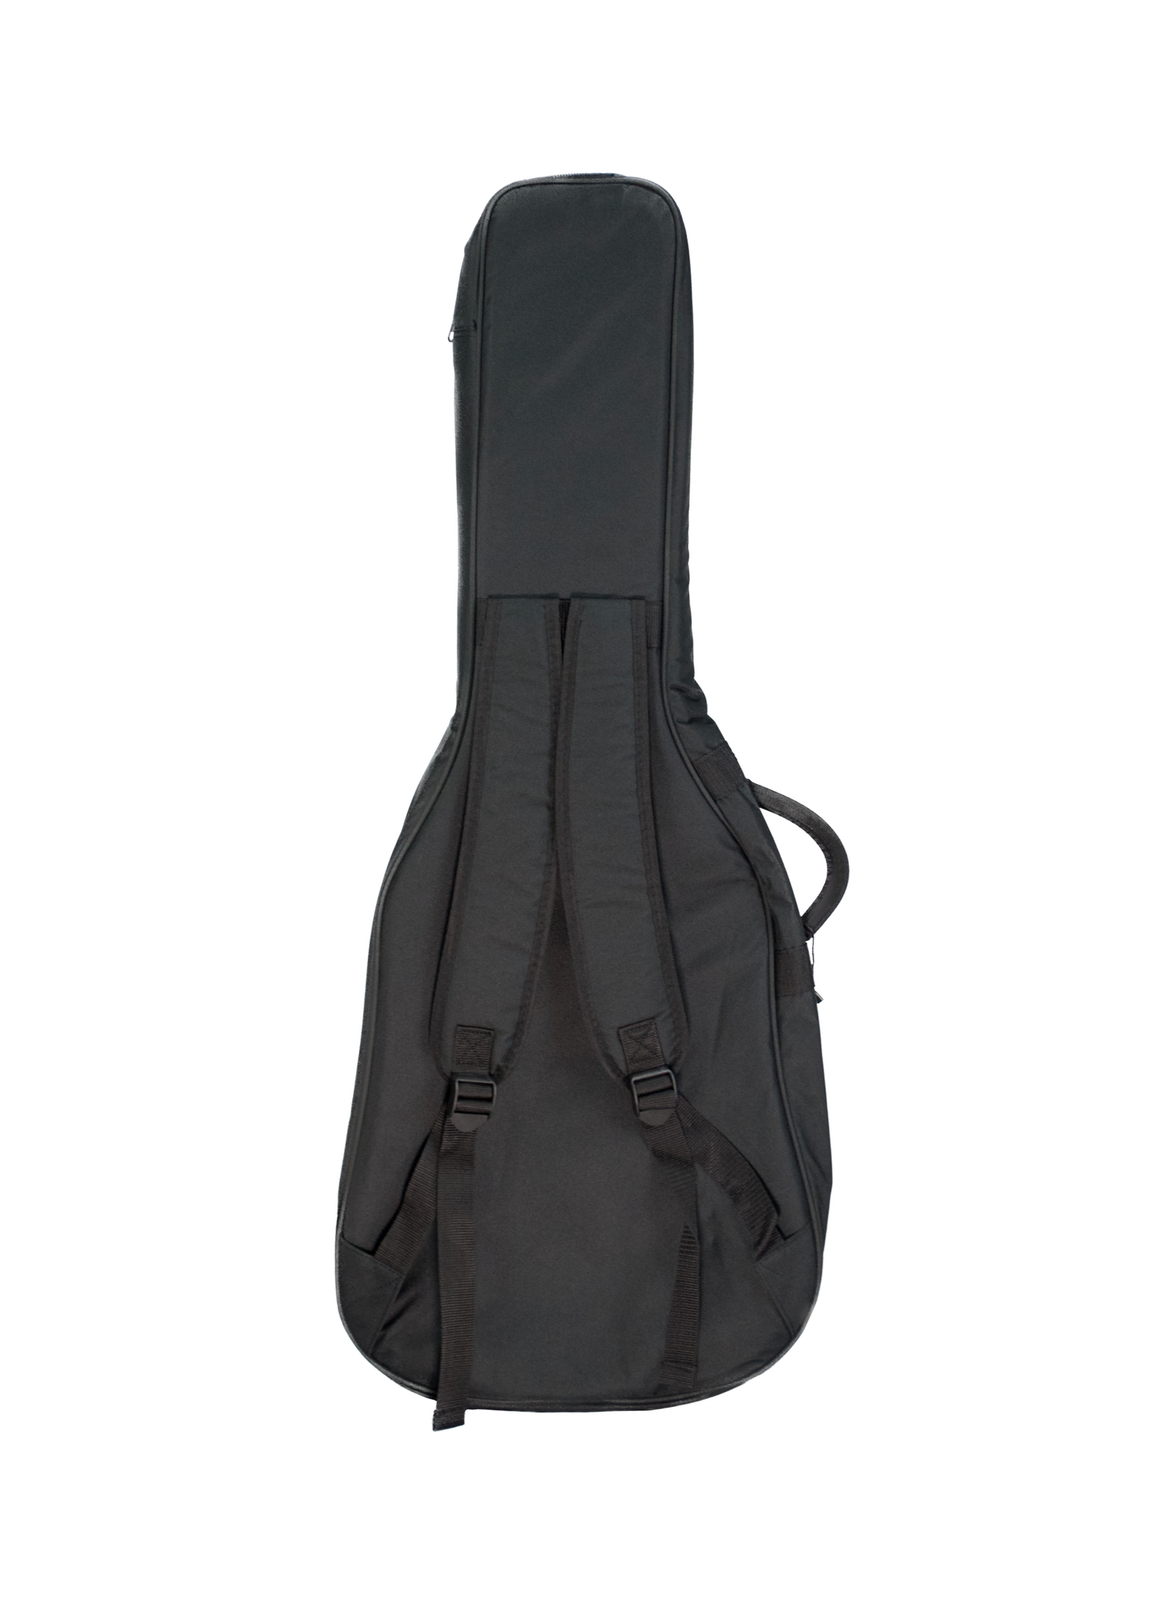 Mammoth MAM15C Classical Guitar Gig Bag | Black